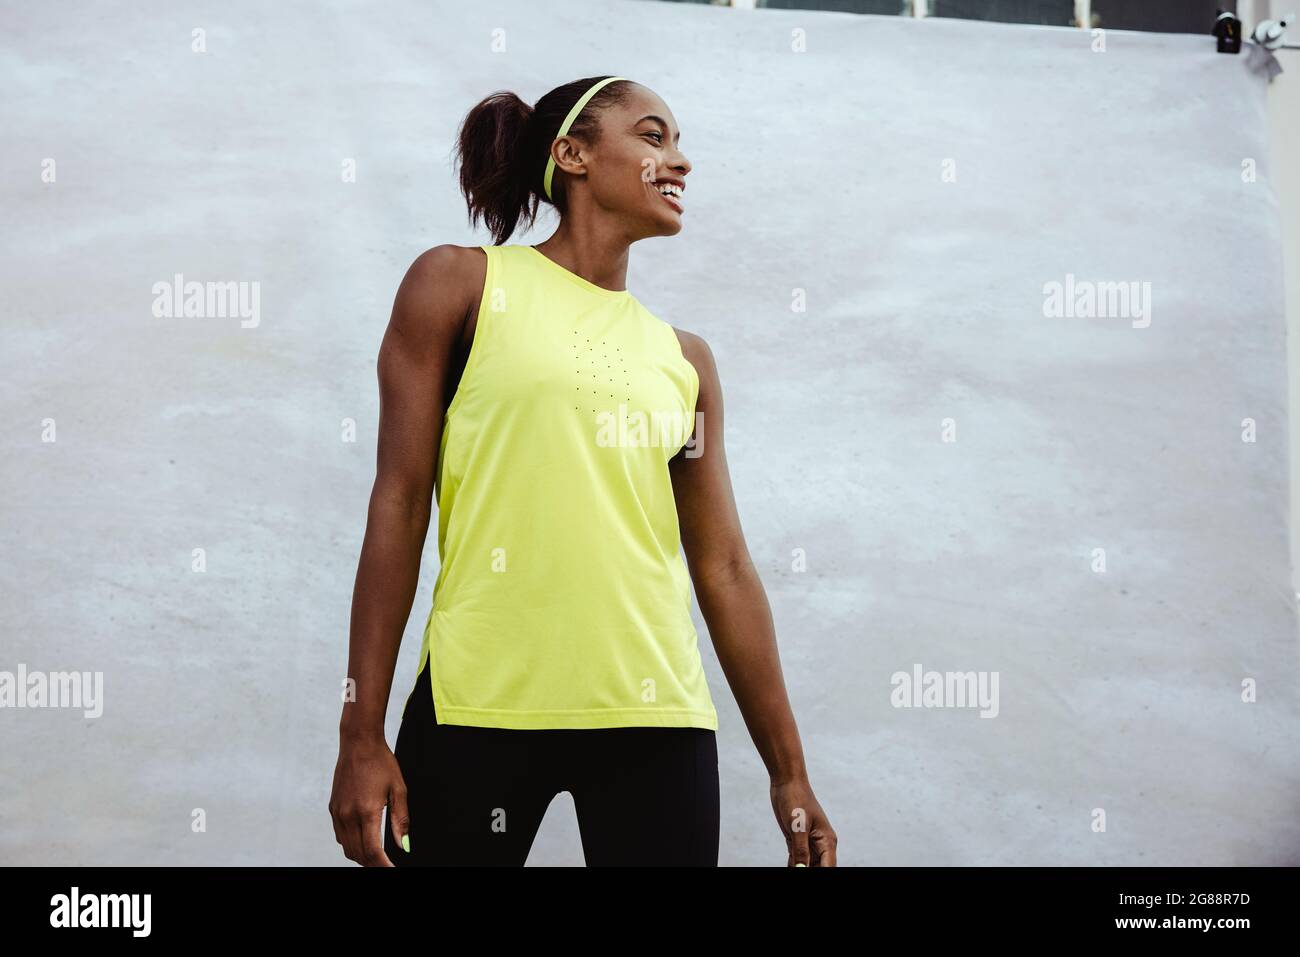 Afrikanische Frau in Sportkleidung, die wegschaut und lächelt. Athletin, die vor weißem Hintergrund steht. Stockfoto